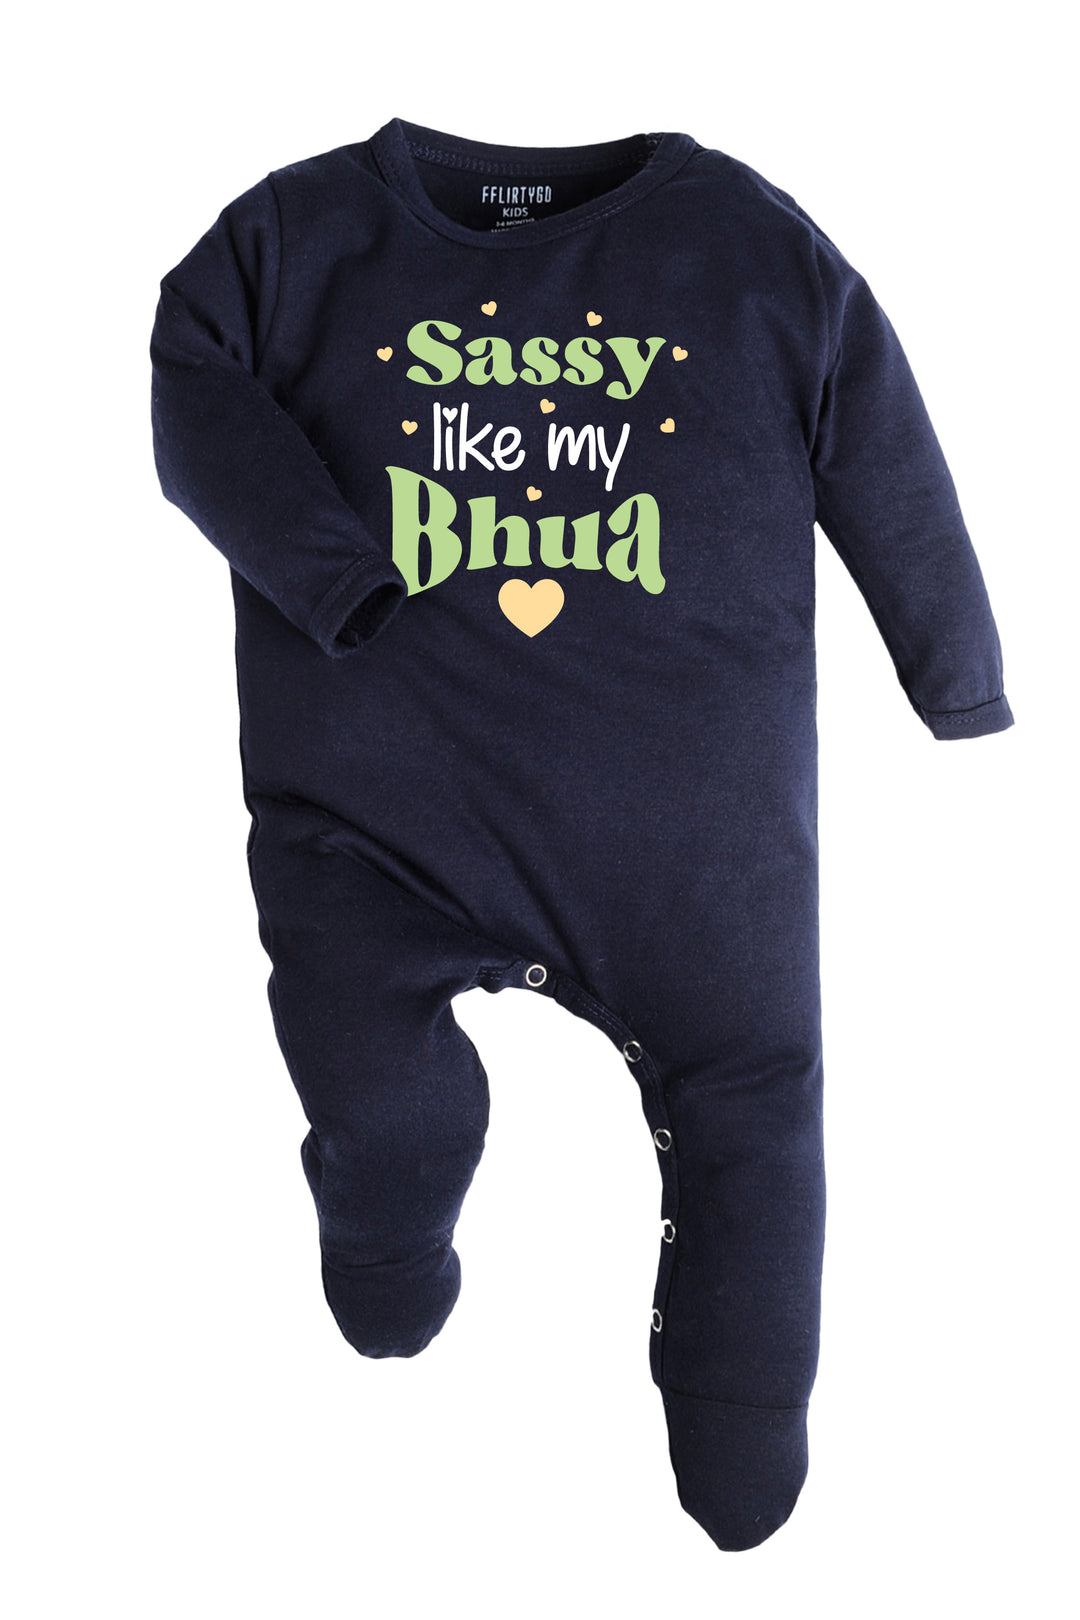 Sassy Like My Bhua Baby Romper | Onesies